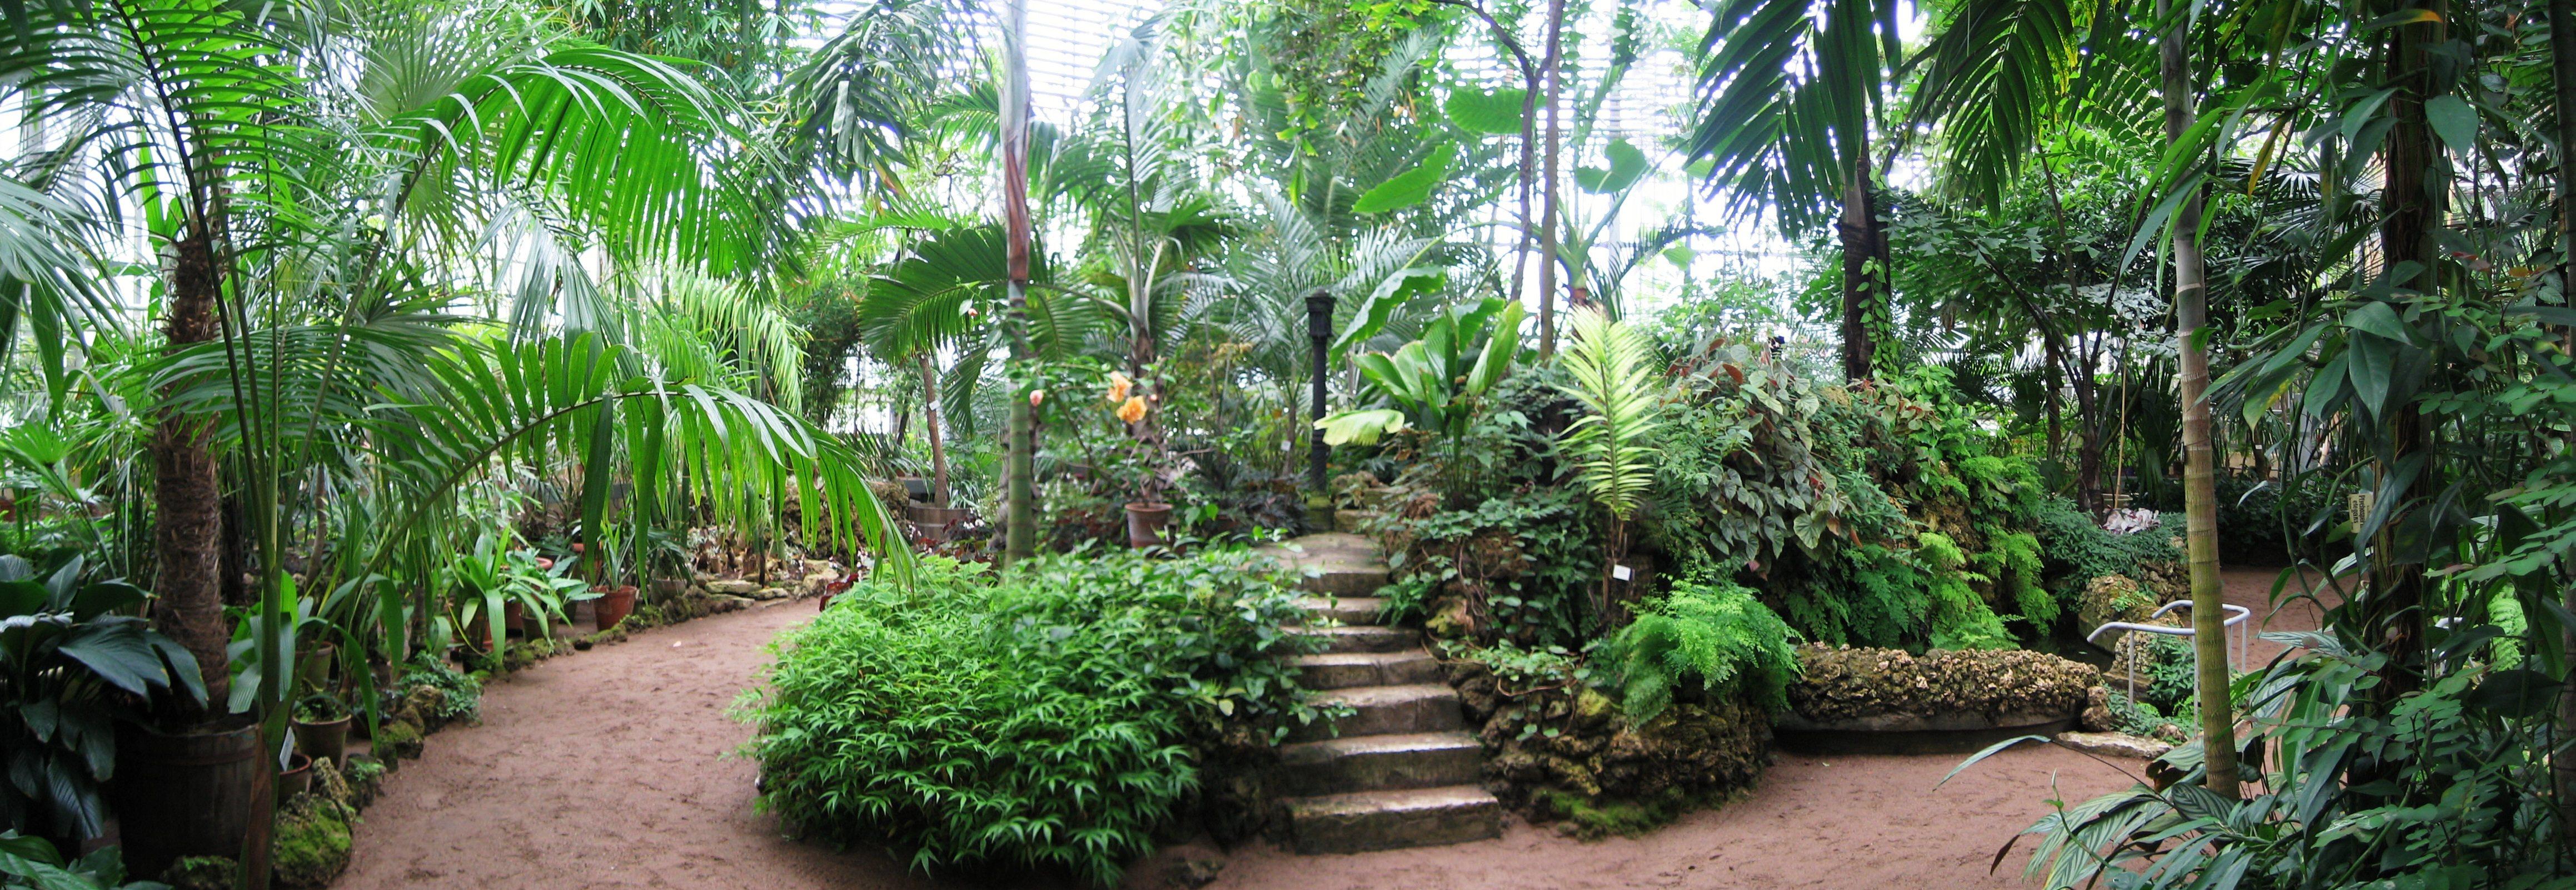 Ботанический сад тюмень фото